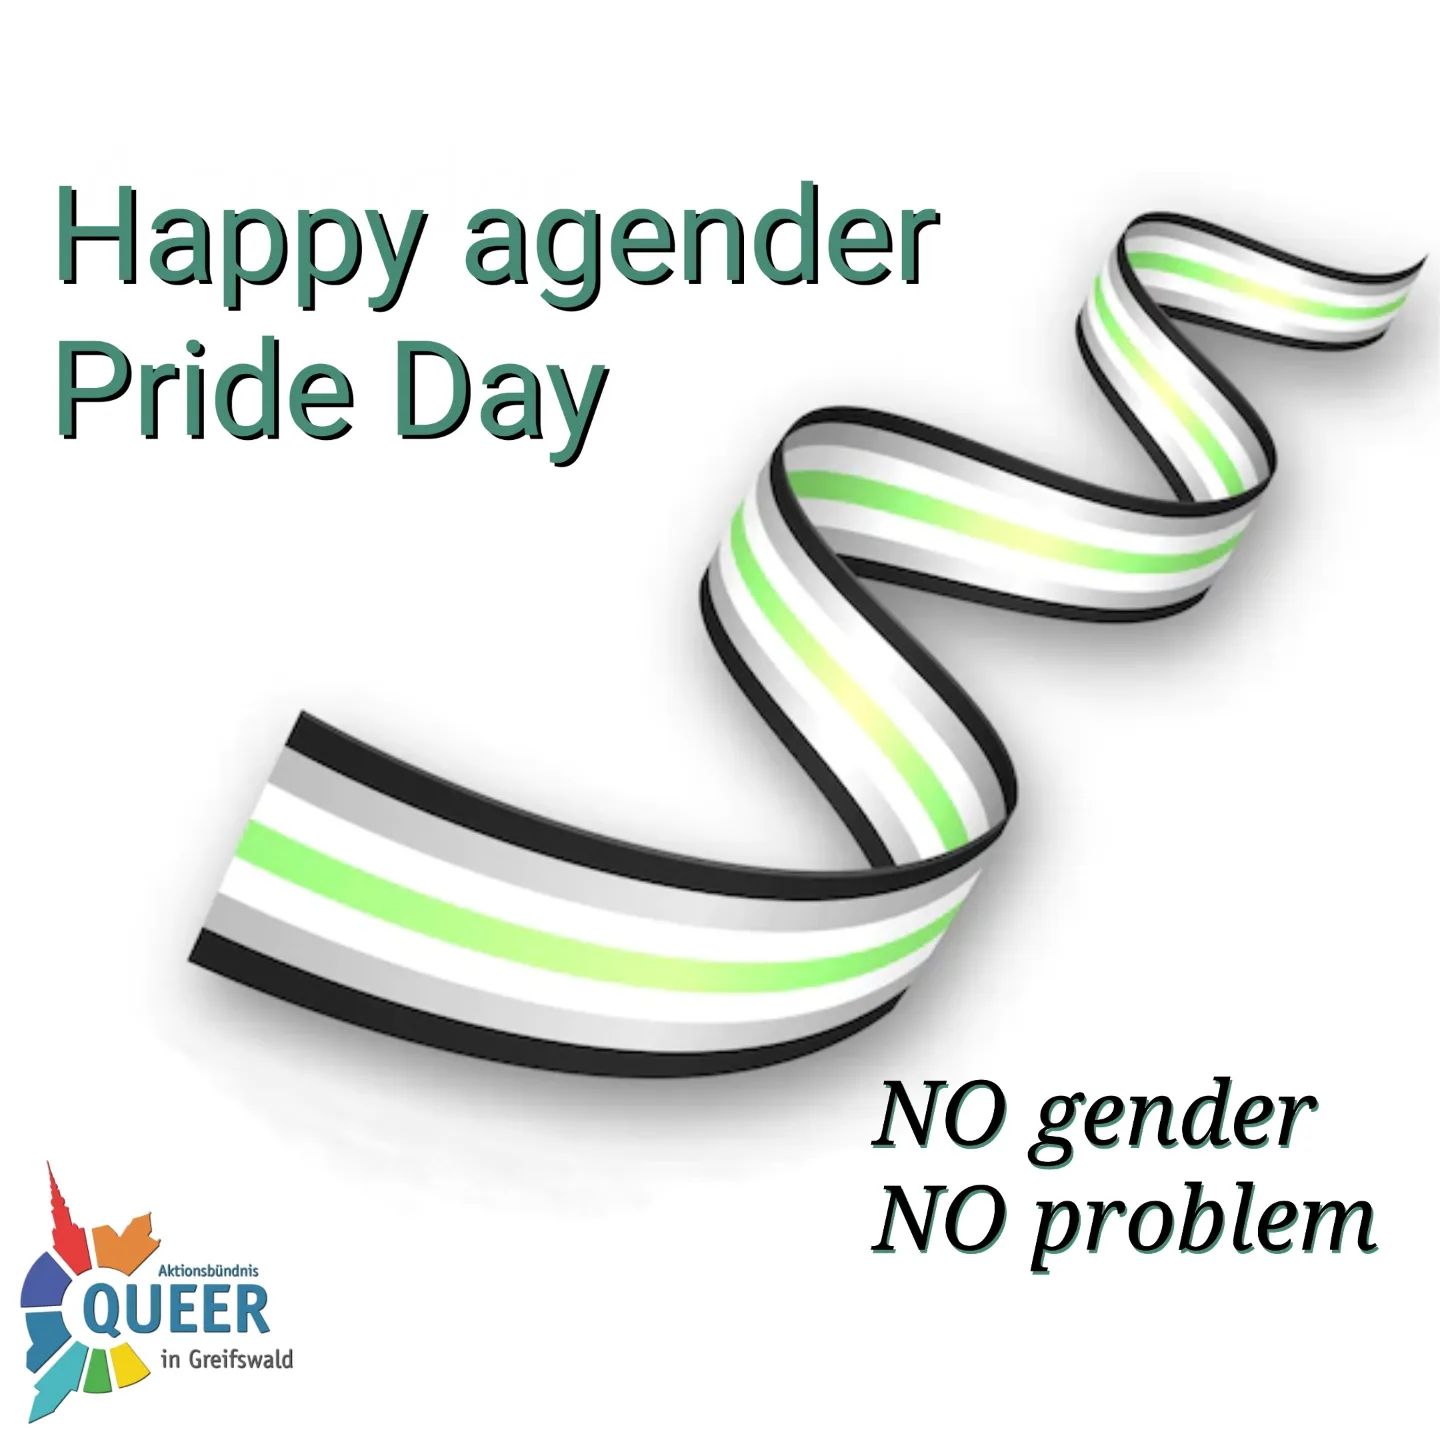 🖤🤍💚🤍🖤
Happy agender Pride Day !

Es gibt Menschen, die sich mit keiner geschlechtlichen Identität identifizieren. 
Heute ist EUER Tag 

Einige agender Personen identifizieren sich auch als non-binär an.

Aber egal, wie man sich selbst am wohlsten fühlt, Hauptsache man fühlt sich wohl.
Da braucht es keine klaren Label oder Schubfächer.

#queer #queermv #queer_hgw #queerinmv
#pride #csd #csddeutschland #csdnord #lsvd 
#gay #lesbisch #schwul #bi #trans #inter #andersabernormal 
#agender